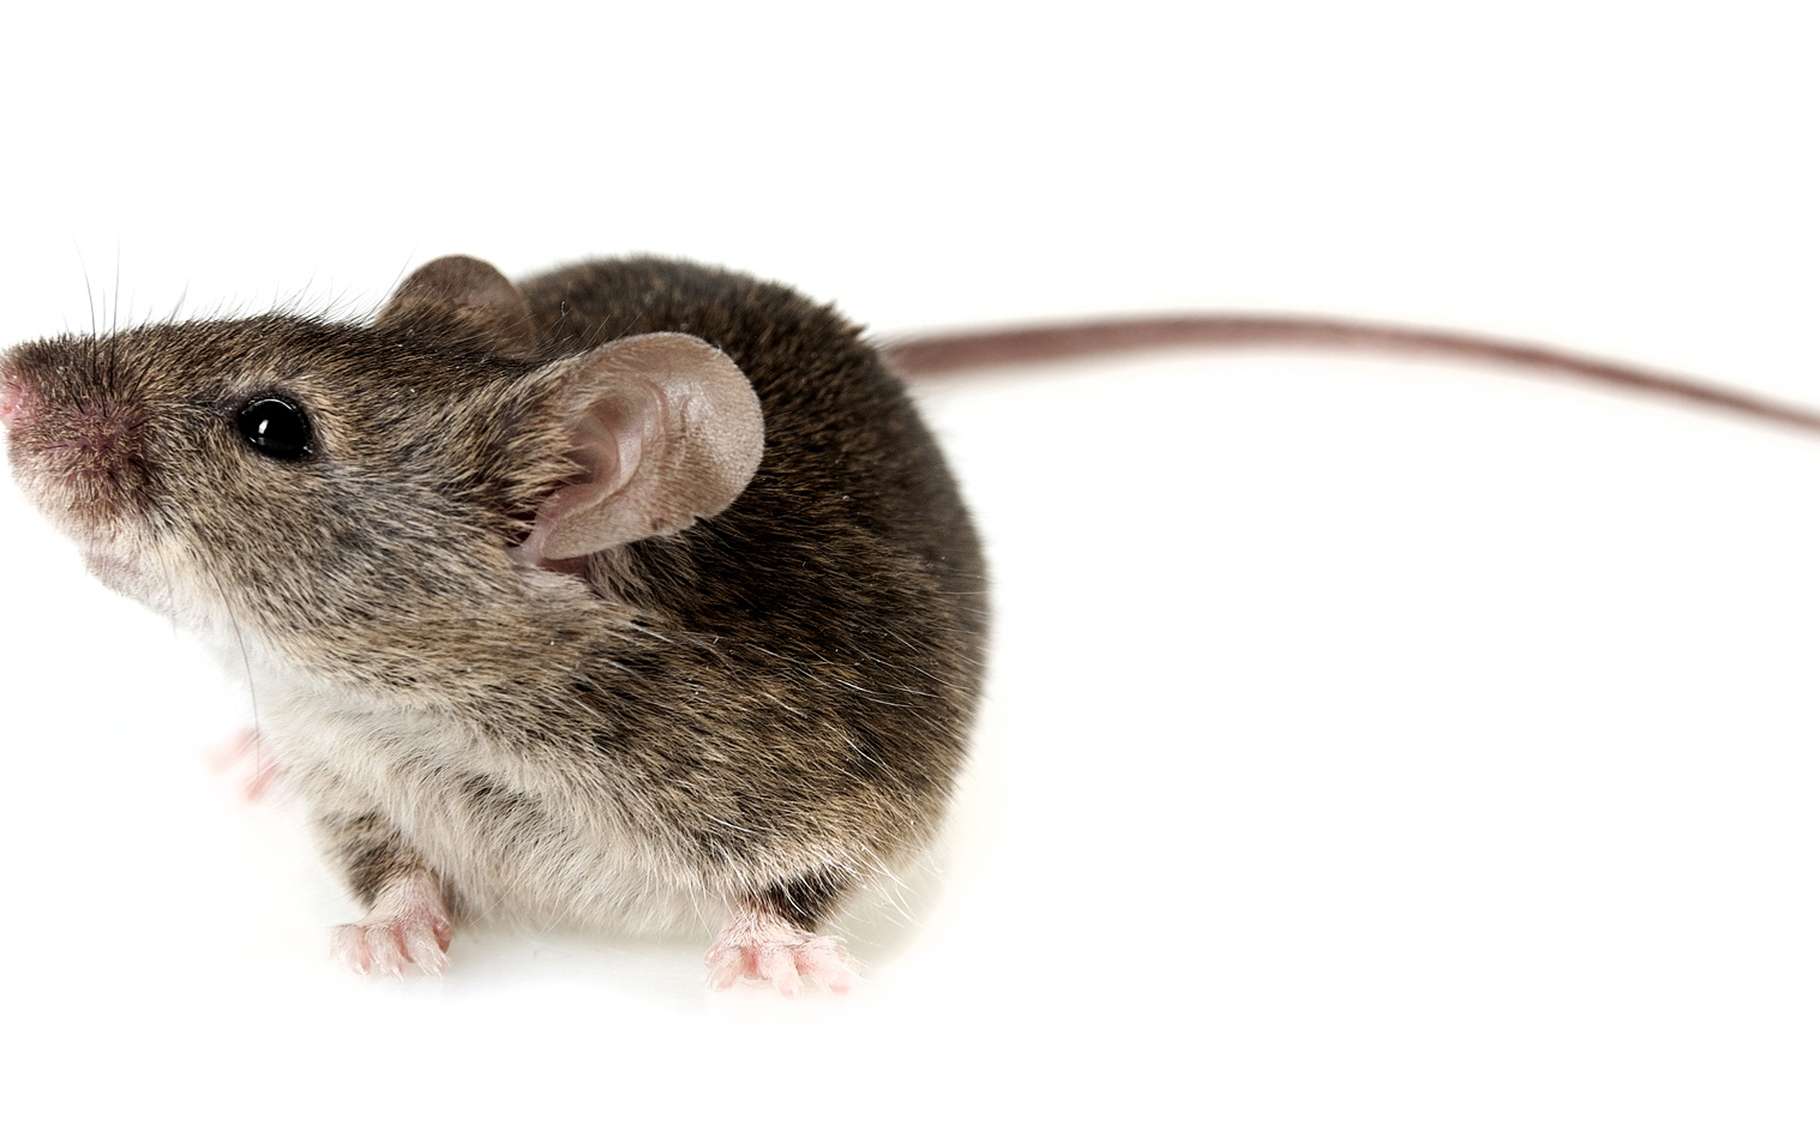 Des souris ont pu recouvrer la vue grâce à des neurones qui repoussent. Pourra-t-on faire la même chose chez l’Homme ? © Kuttelvaserova Stuchelova, Shutterstock